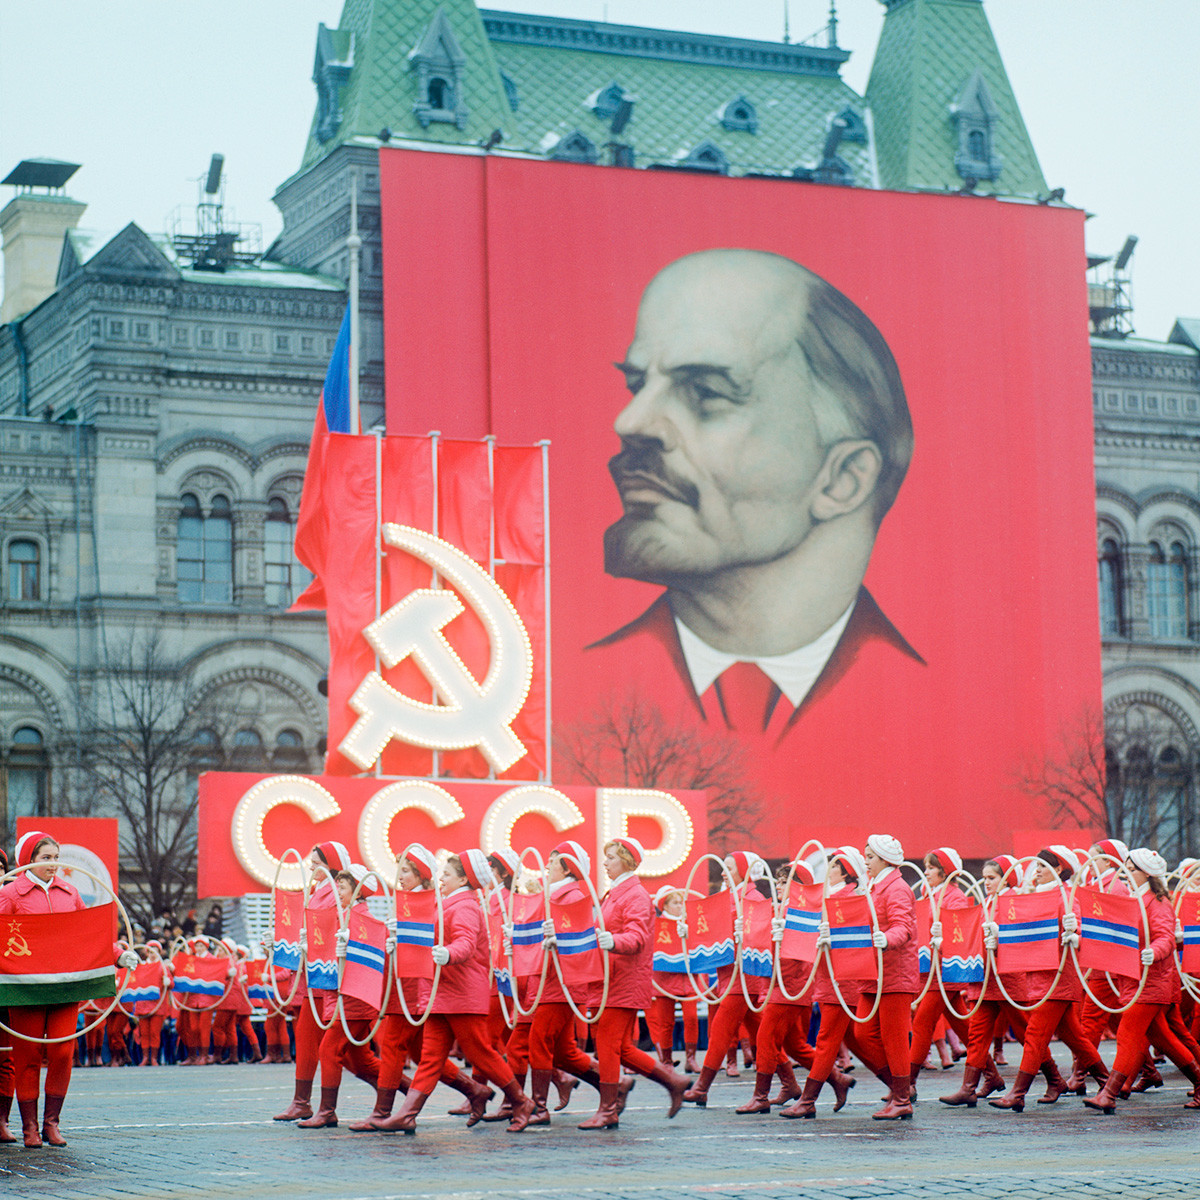 Прослава на 55-годишнината од Големата октомвриска социјалистичка револуција

